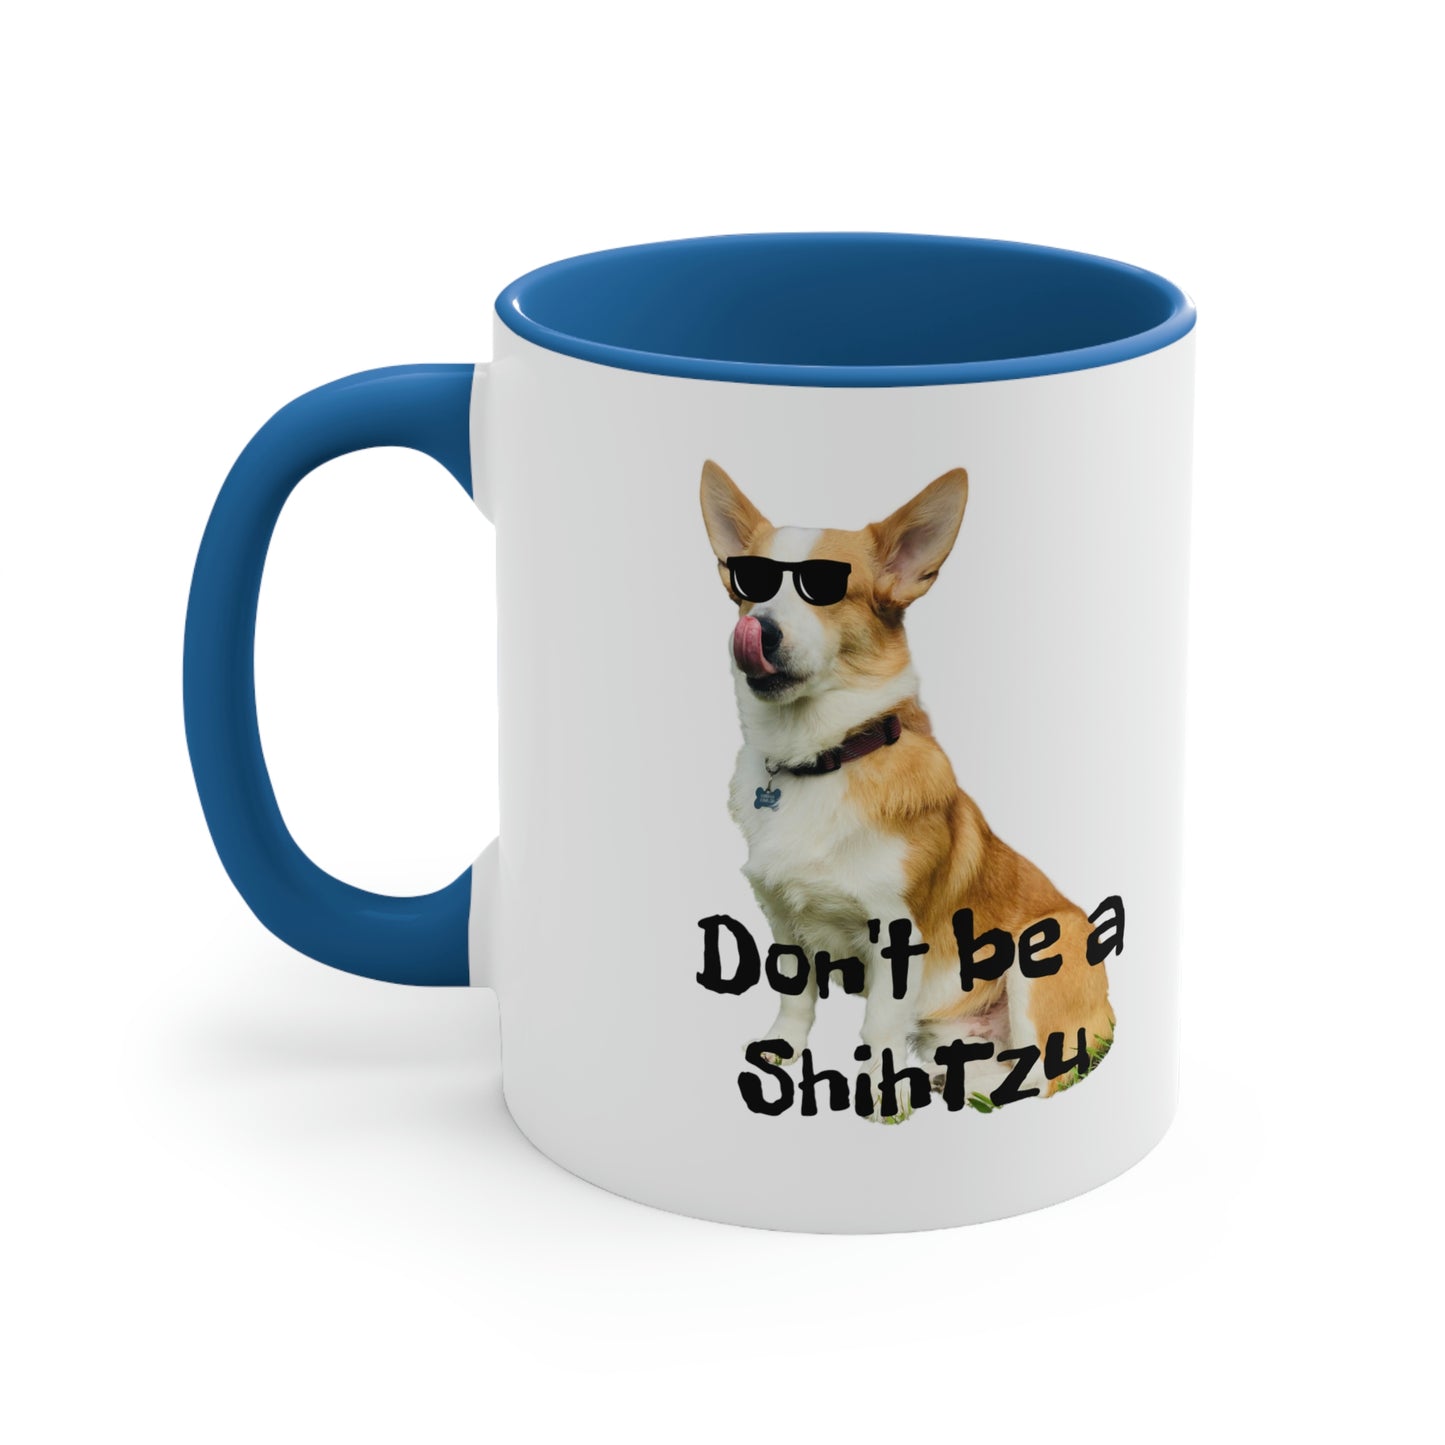 No ShihTzu Corgi Coffee Mug, 11oz